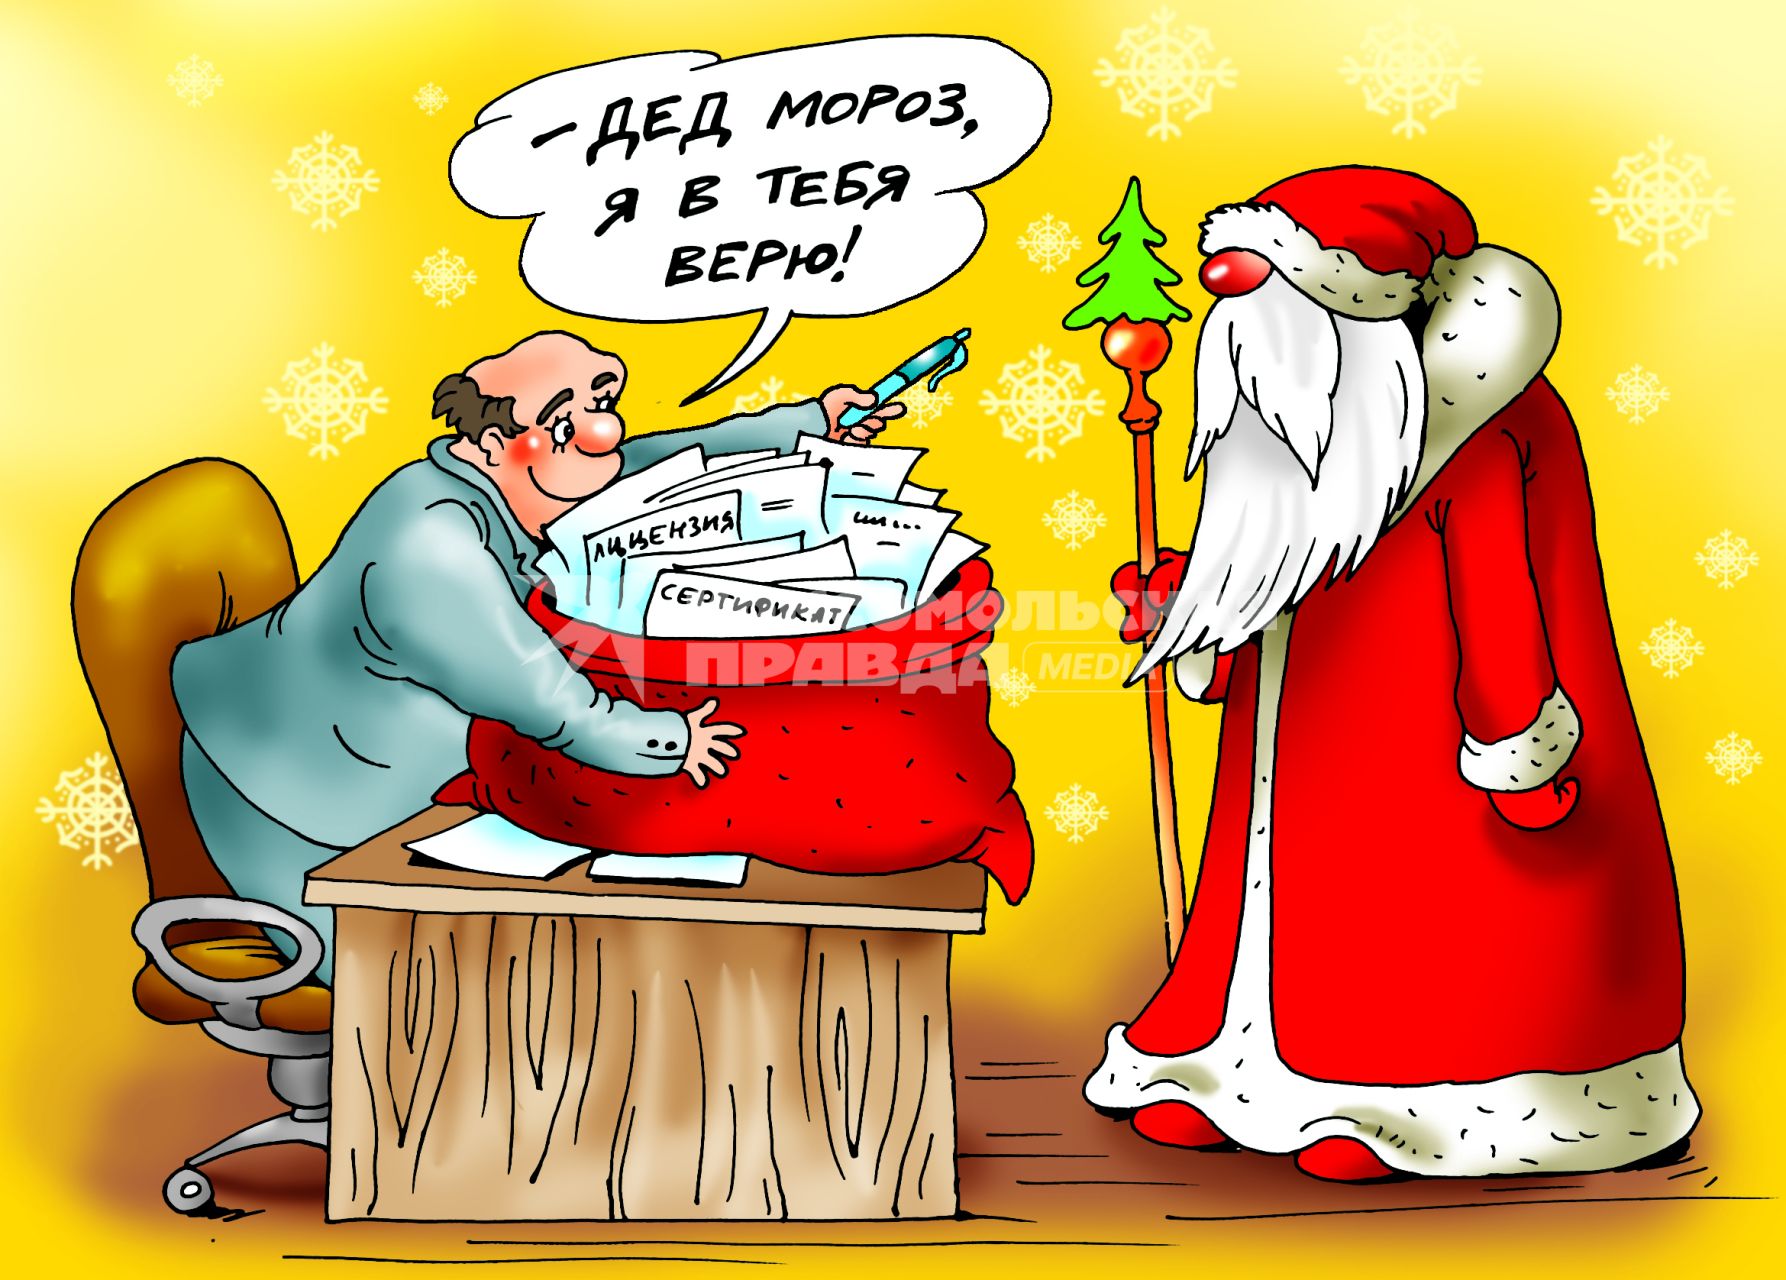 Карикатура на тему получения аниматорами лицензии на проведение новогодних праздников.